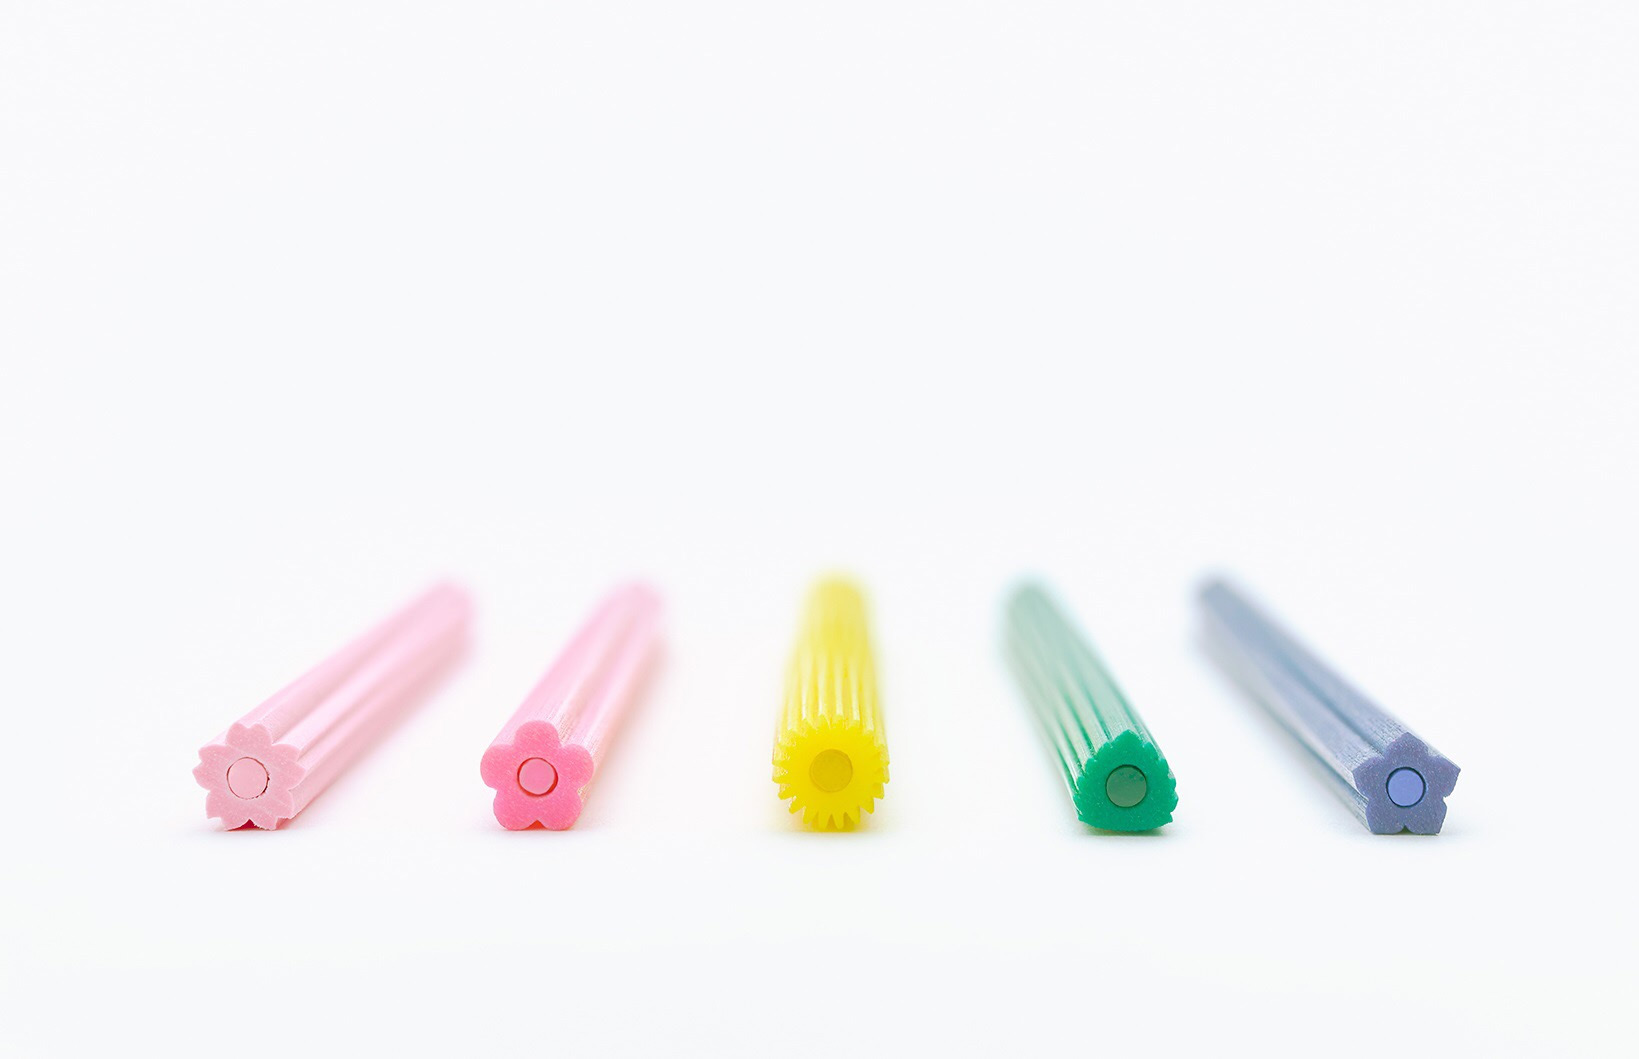 Flower-shaped color pencils set